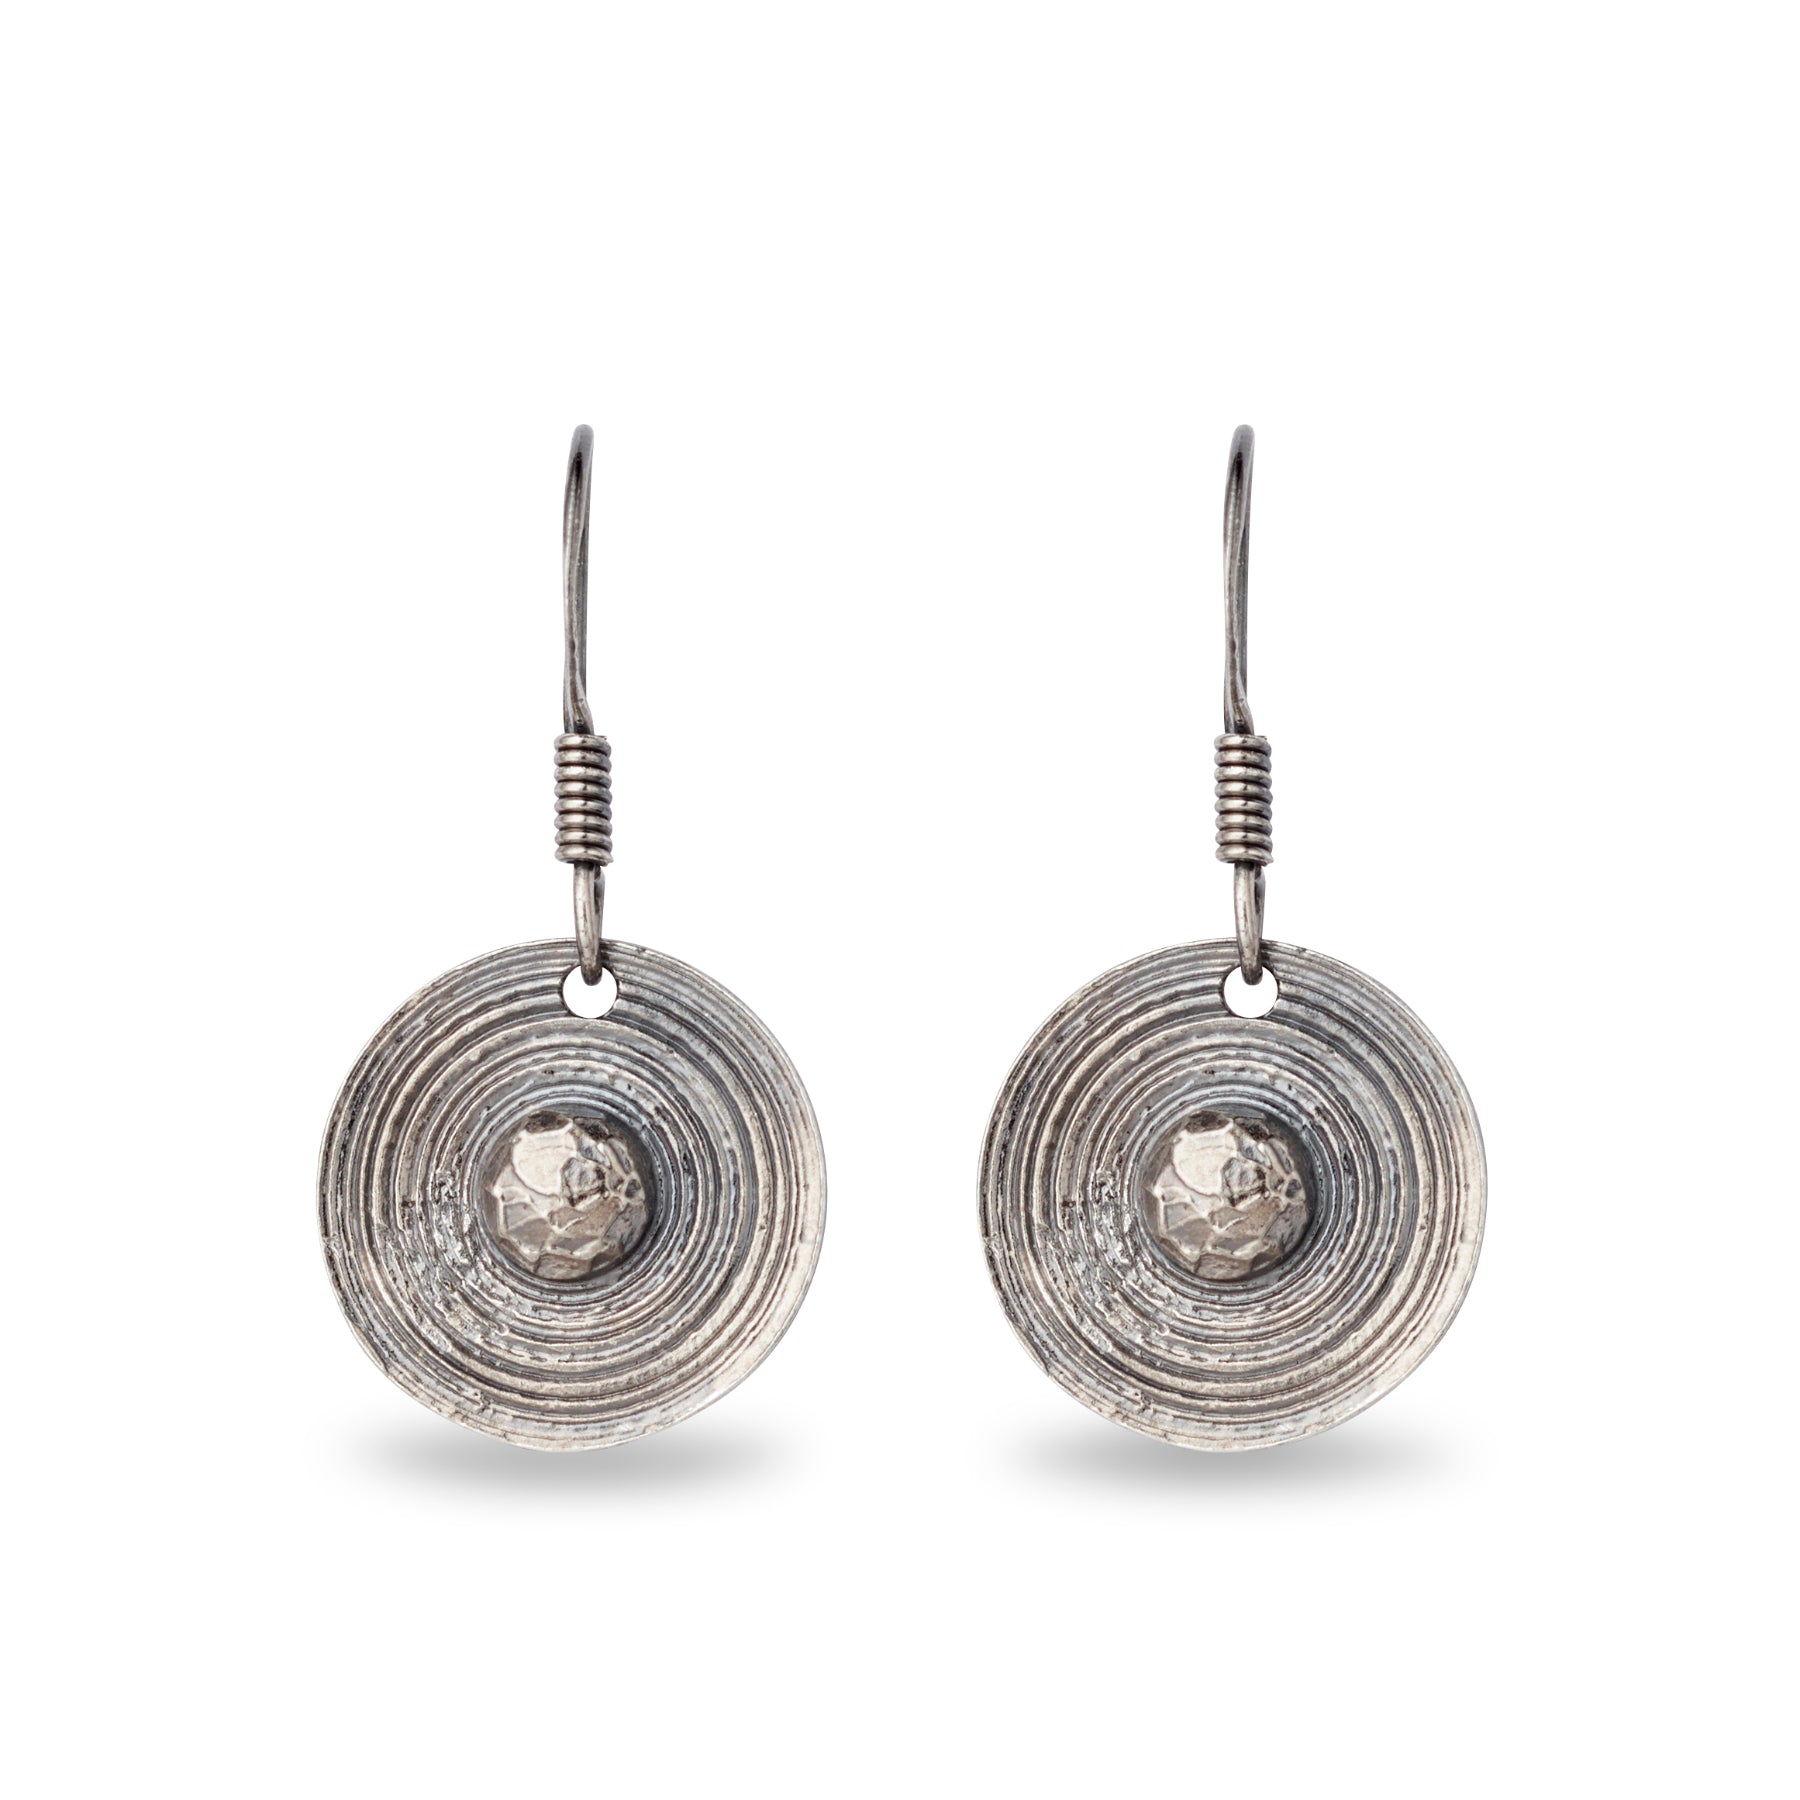 Viking shield earrings in oxidized silver